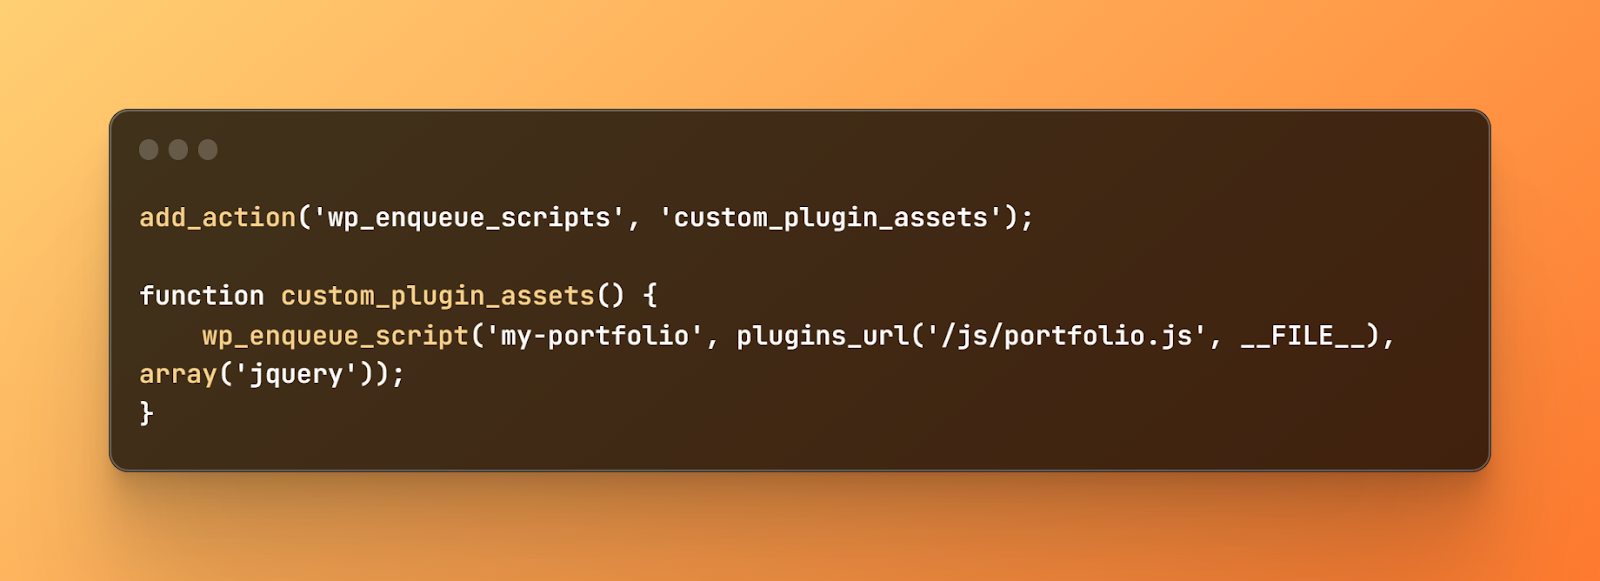 wp_enqueue_script code, add_action('wp_enqueue_scripts', 'custom_plugin_assets'); function custom_plugin_assets() {  wp_enqueue_script('my-portfolio', plugins_url('/js/portfolio.js', __FILE__), array('jquery'));}